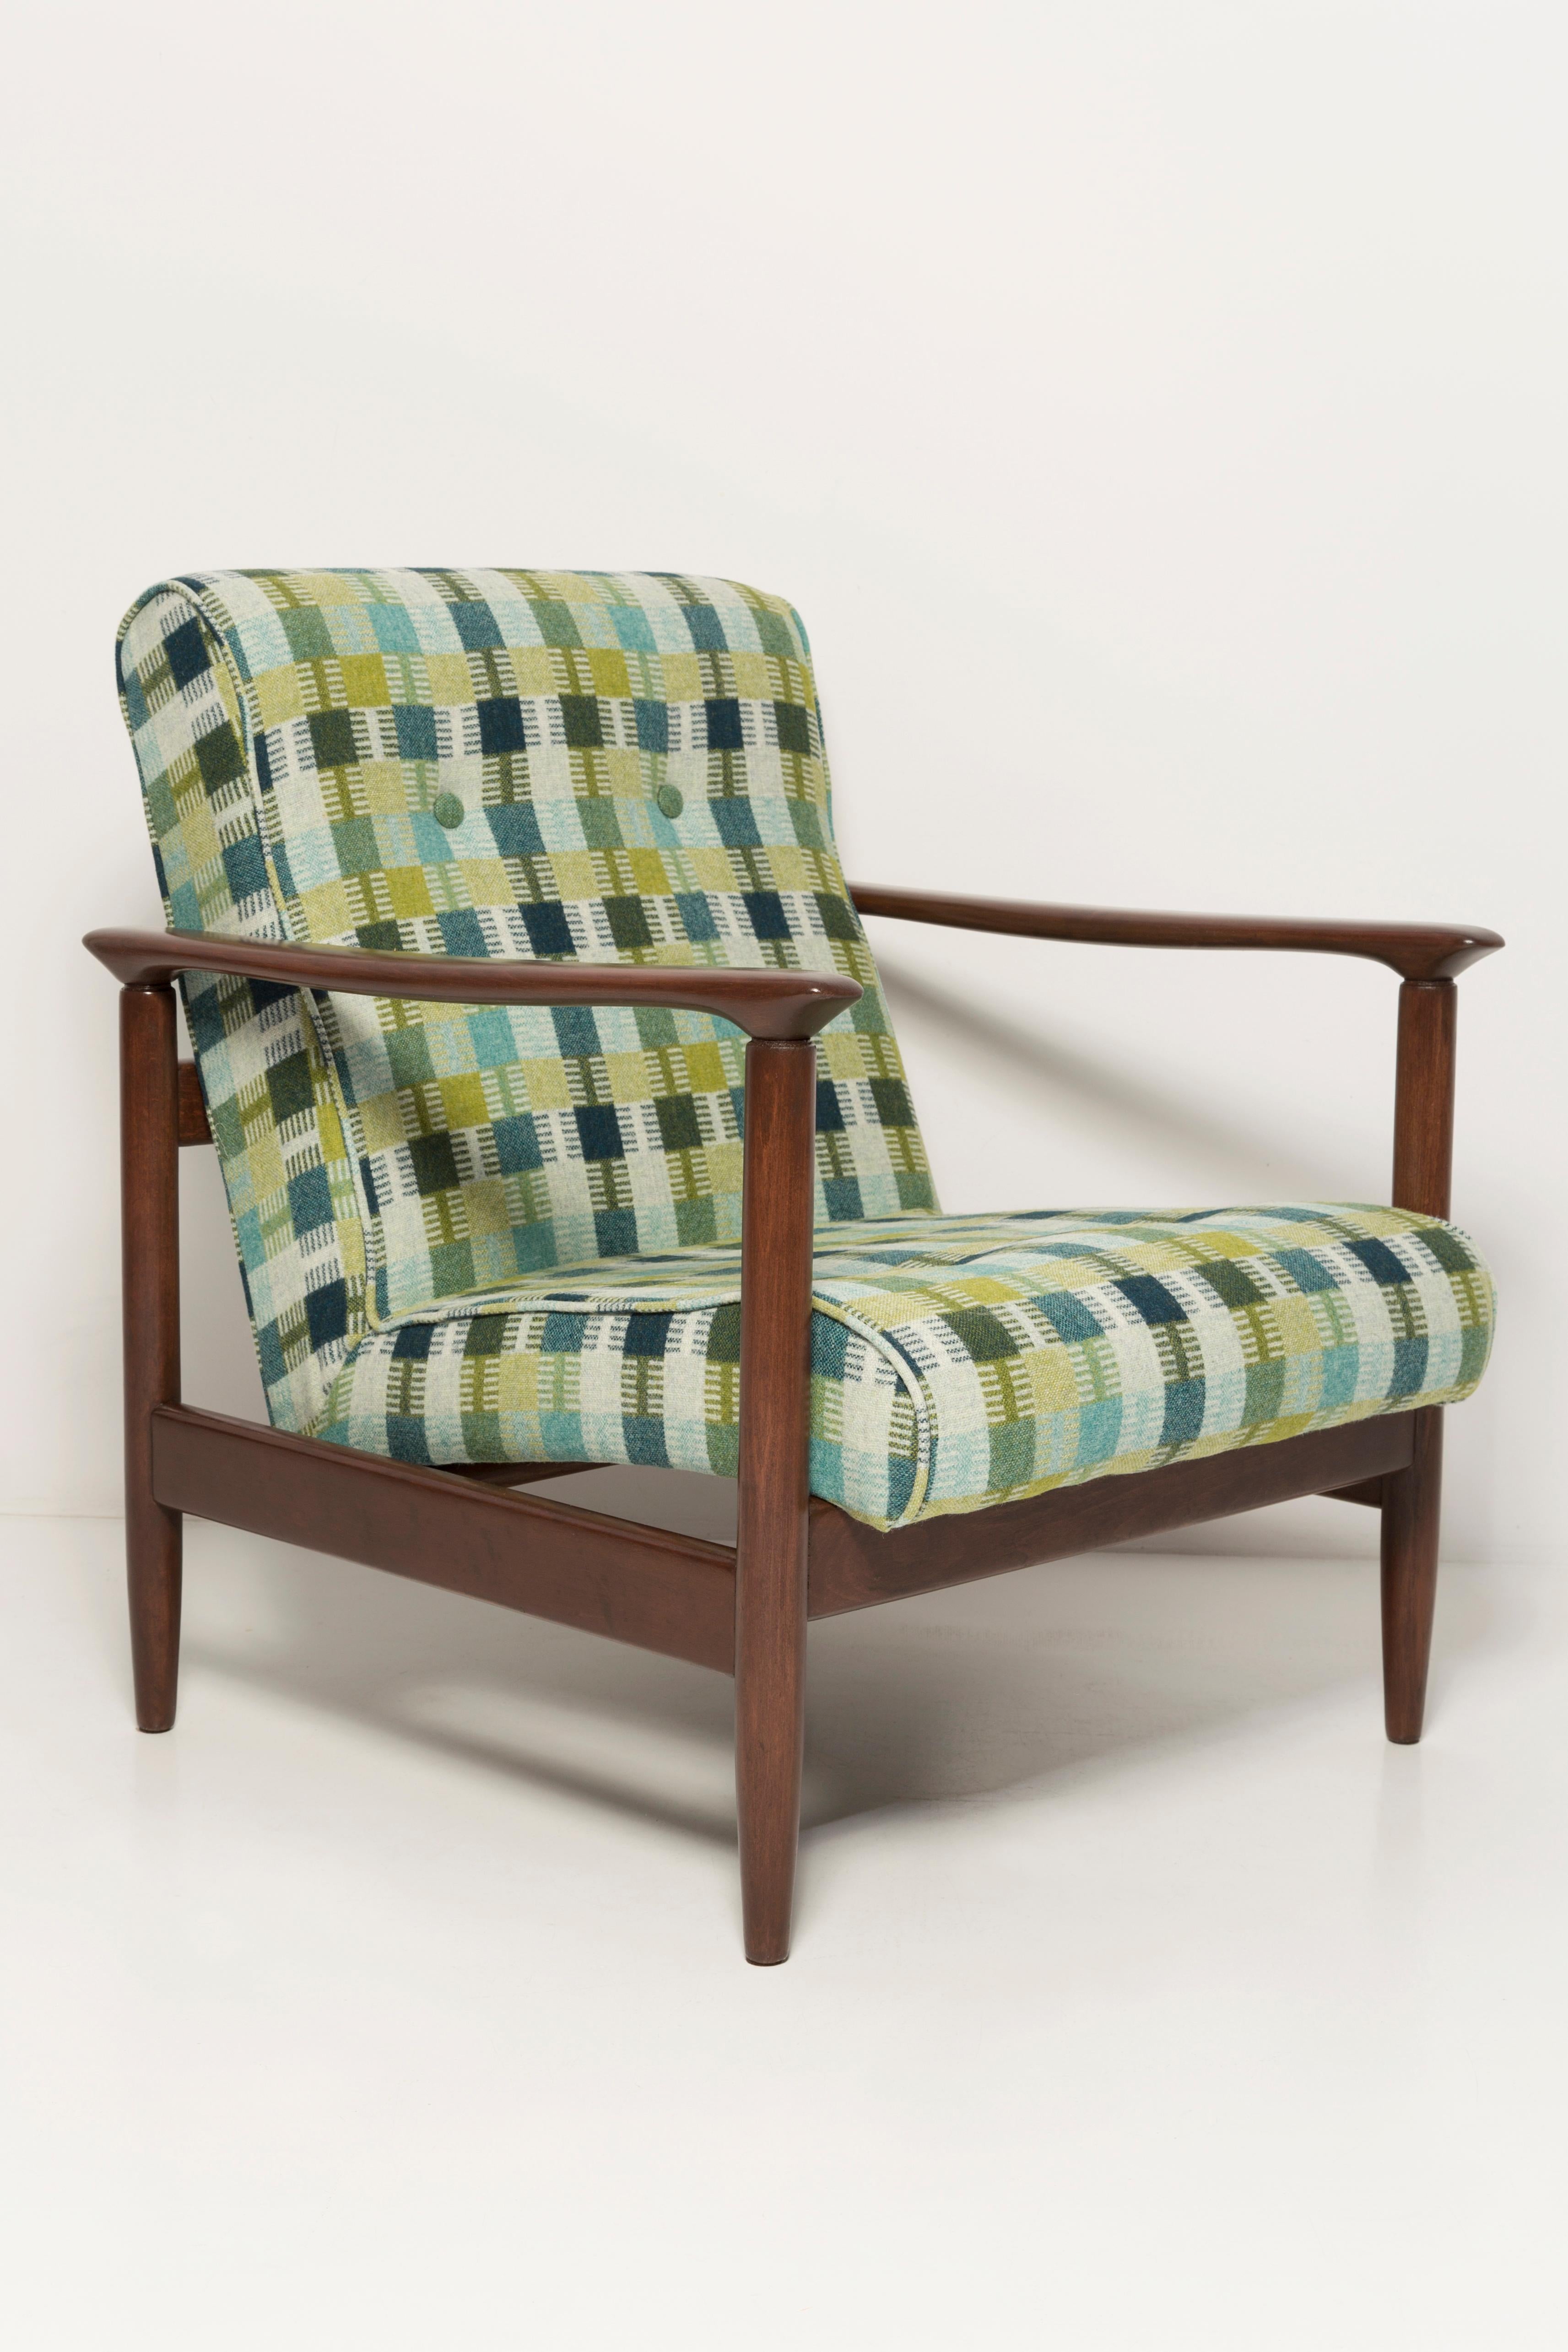 Schöner Sessel aus grüner Wolle GFM-142, entworfen von Edmund Homa, einem polnischen Architekten, Designer von Industriedesign und Innenarchitektur, Professor an der Akademie der Schönen Künste in Danzig. 

Der Sessel wurde in den 1960er Jahren in